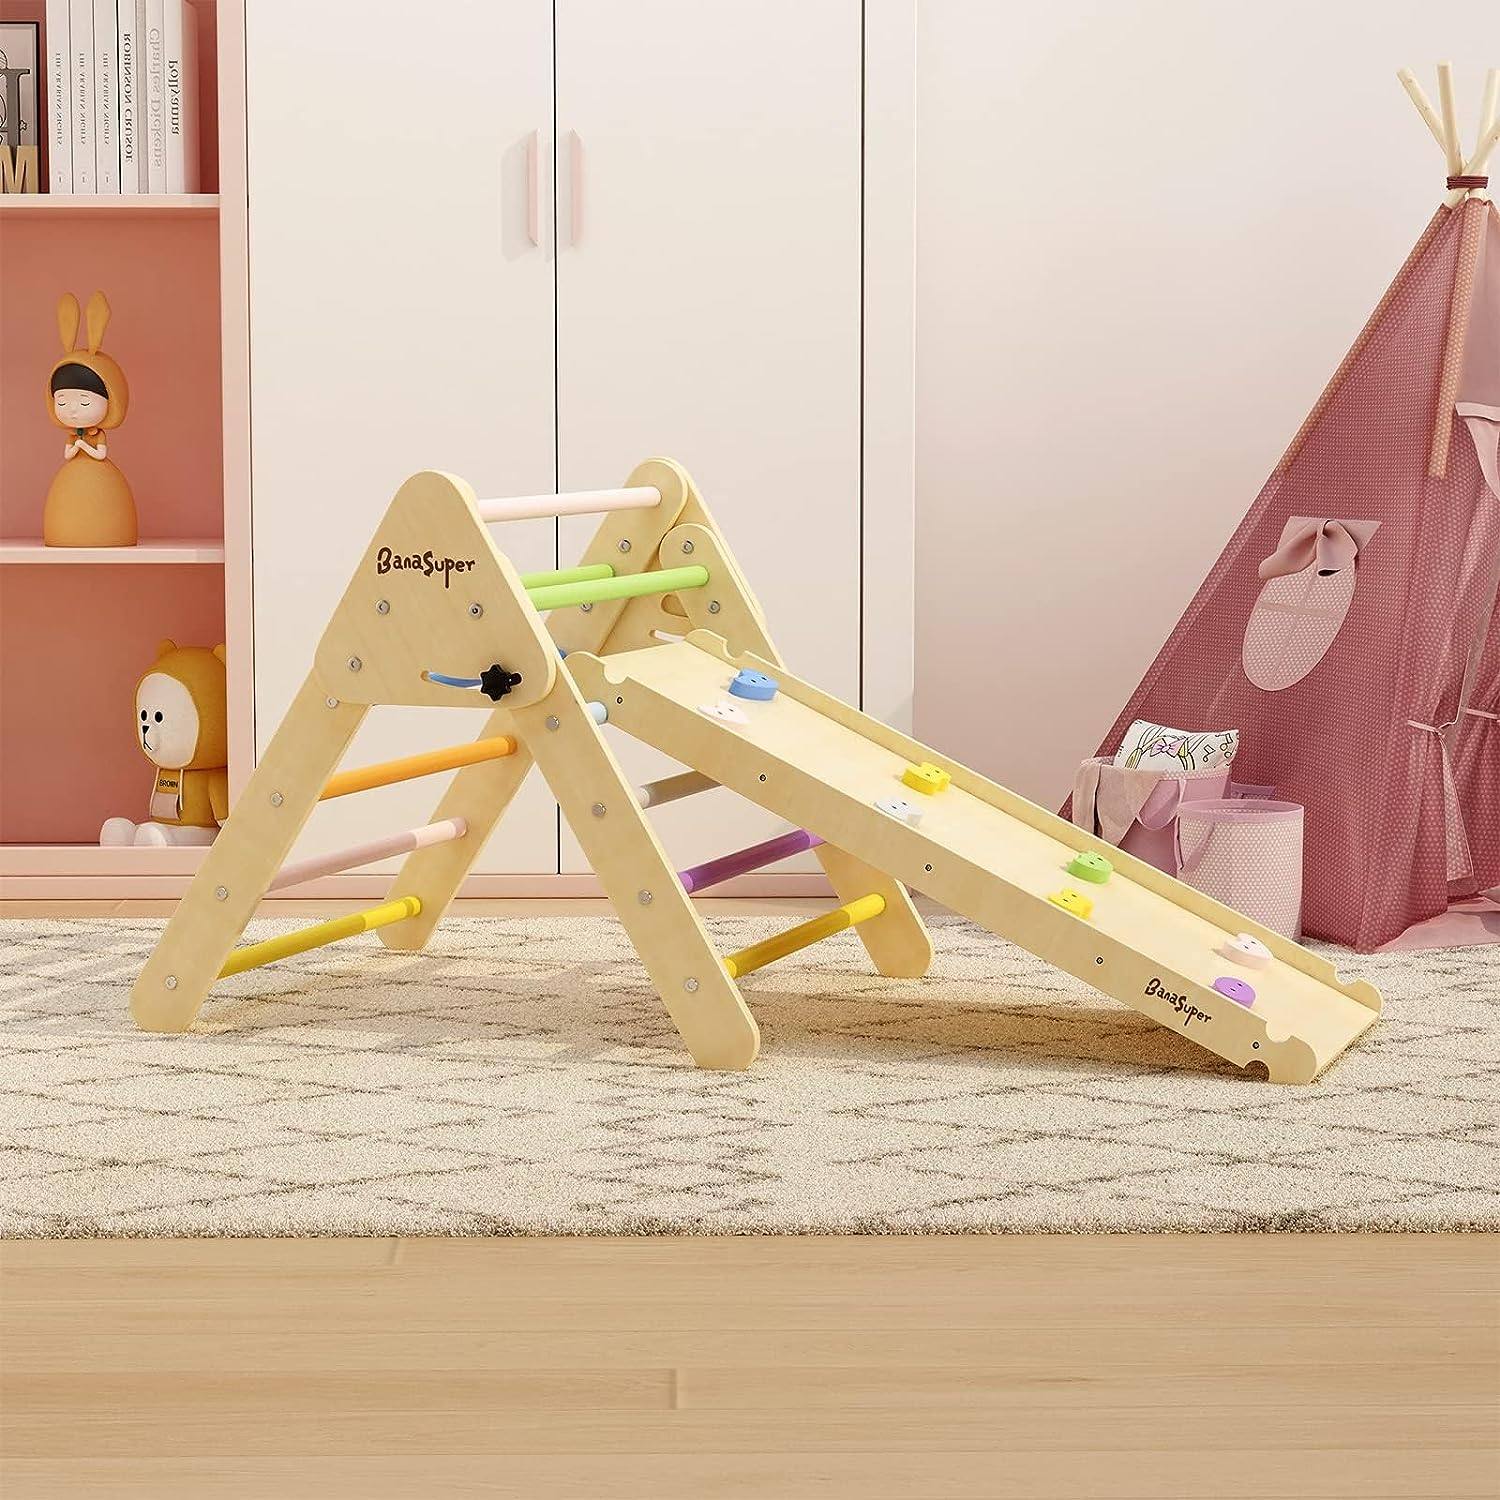 Giochi in legno Montessori: tutti i prodotti da comprare online